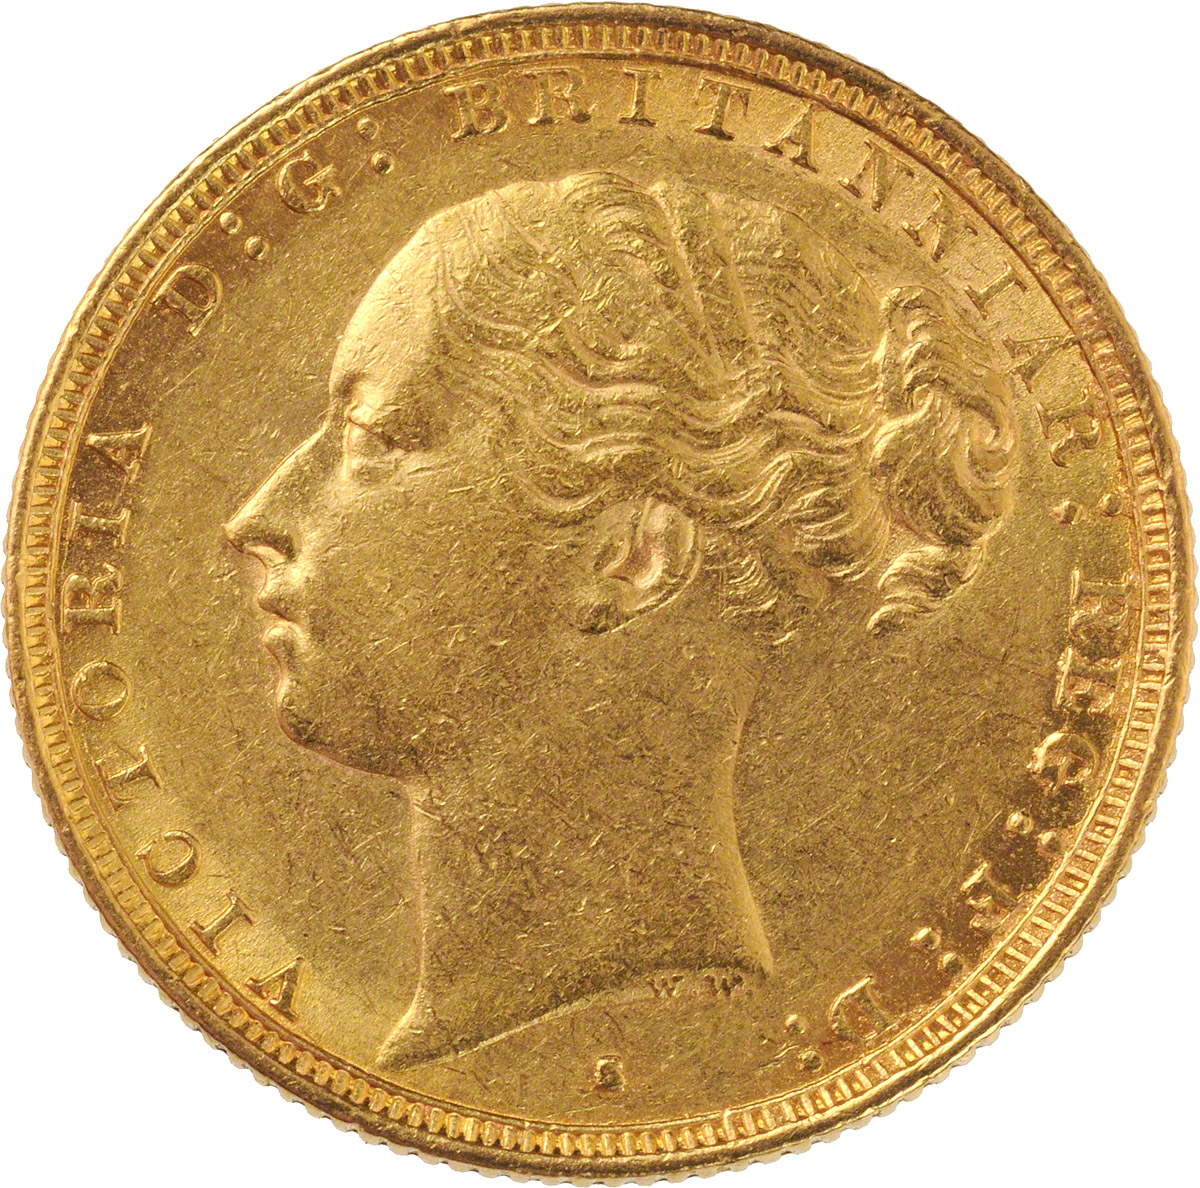 1882 Βικτώρια (Νομισματοκοπείο Σίδνεϊ)